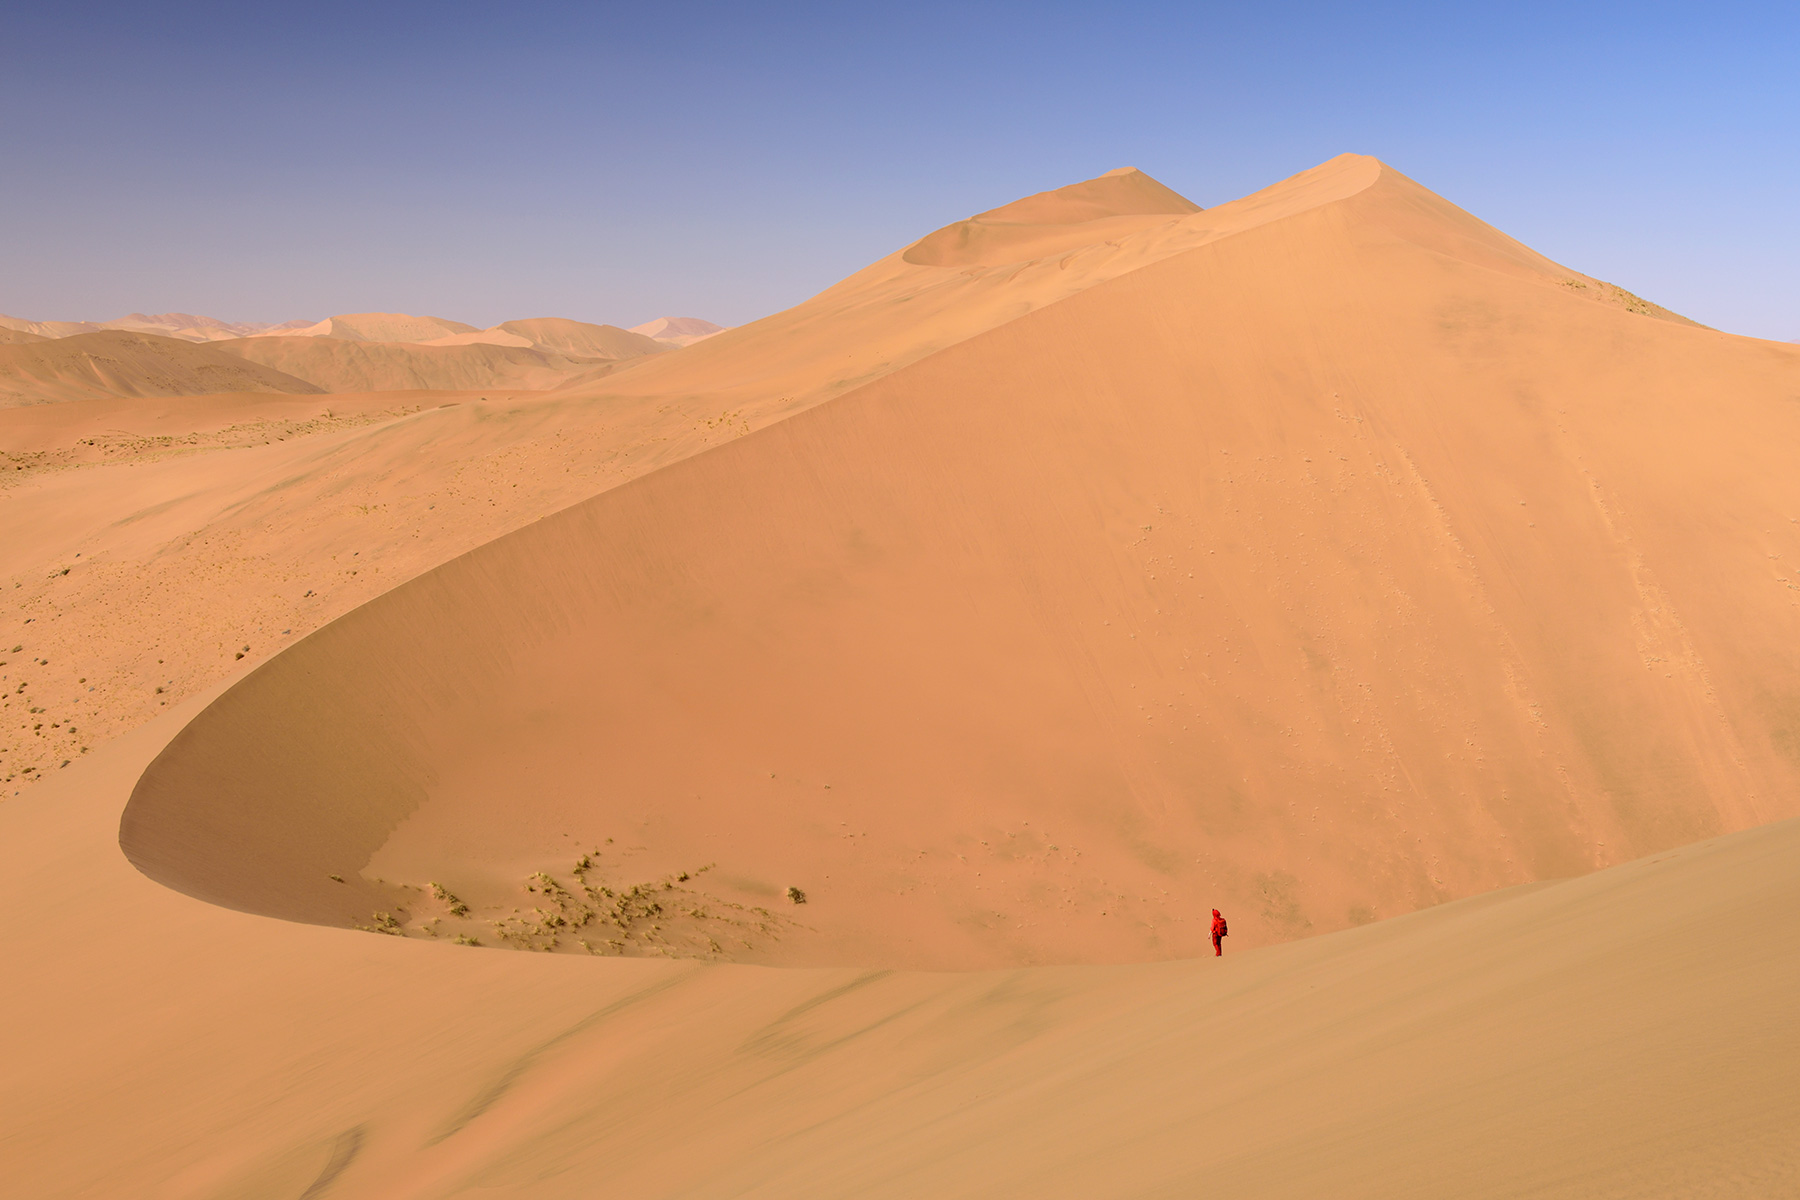 Désert du Badain Jaran (Chine, Mongolie Intérieure) - Randonneuse au loin  sur la crête d'une grande dune formant une large échancrure.